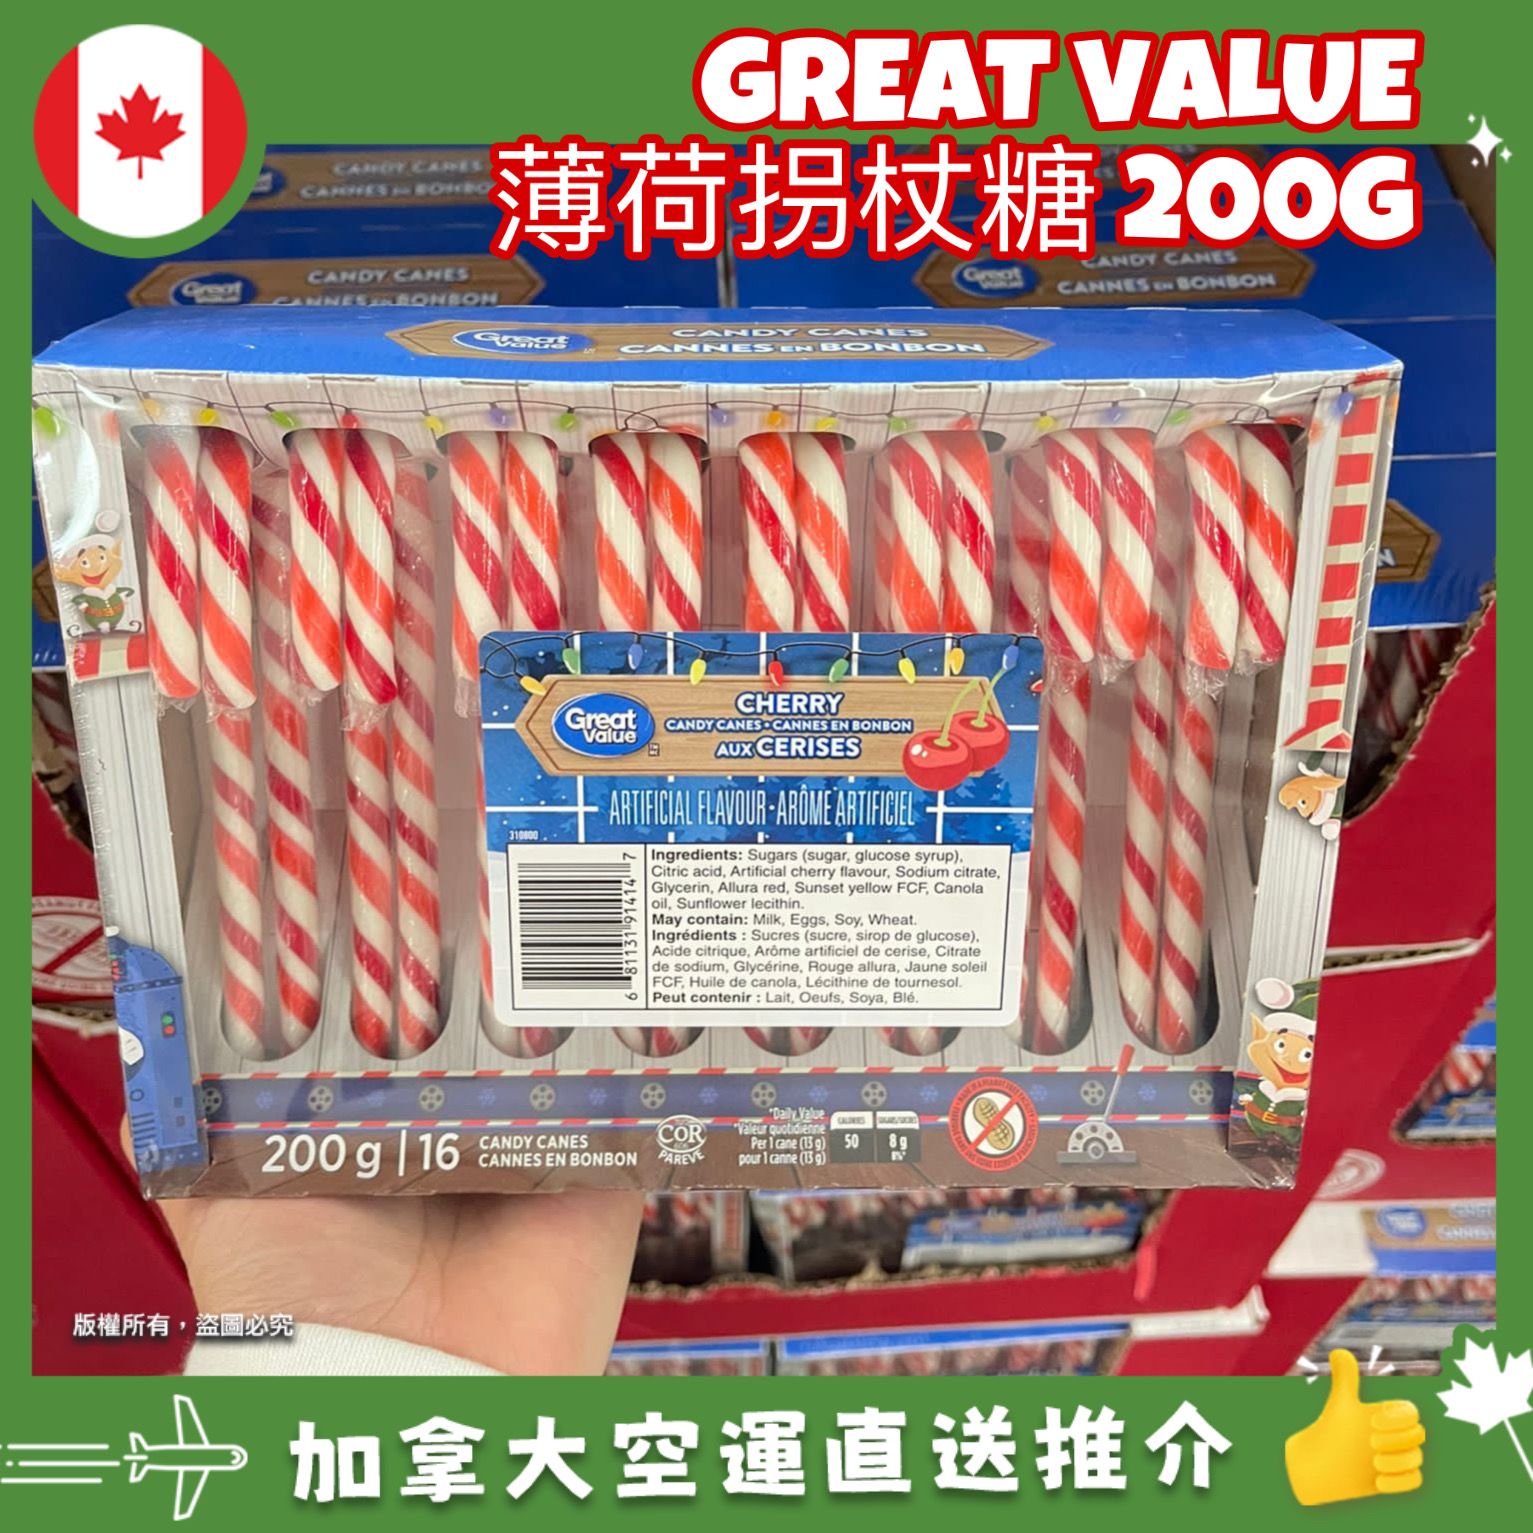 【加拿大空運直送】【加拿大聖誕節限定】 Great Value Cherry Candy Canes 薄荷櫻桃拐杖糖 200g 